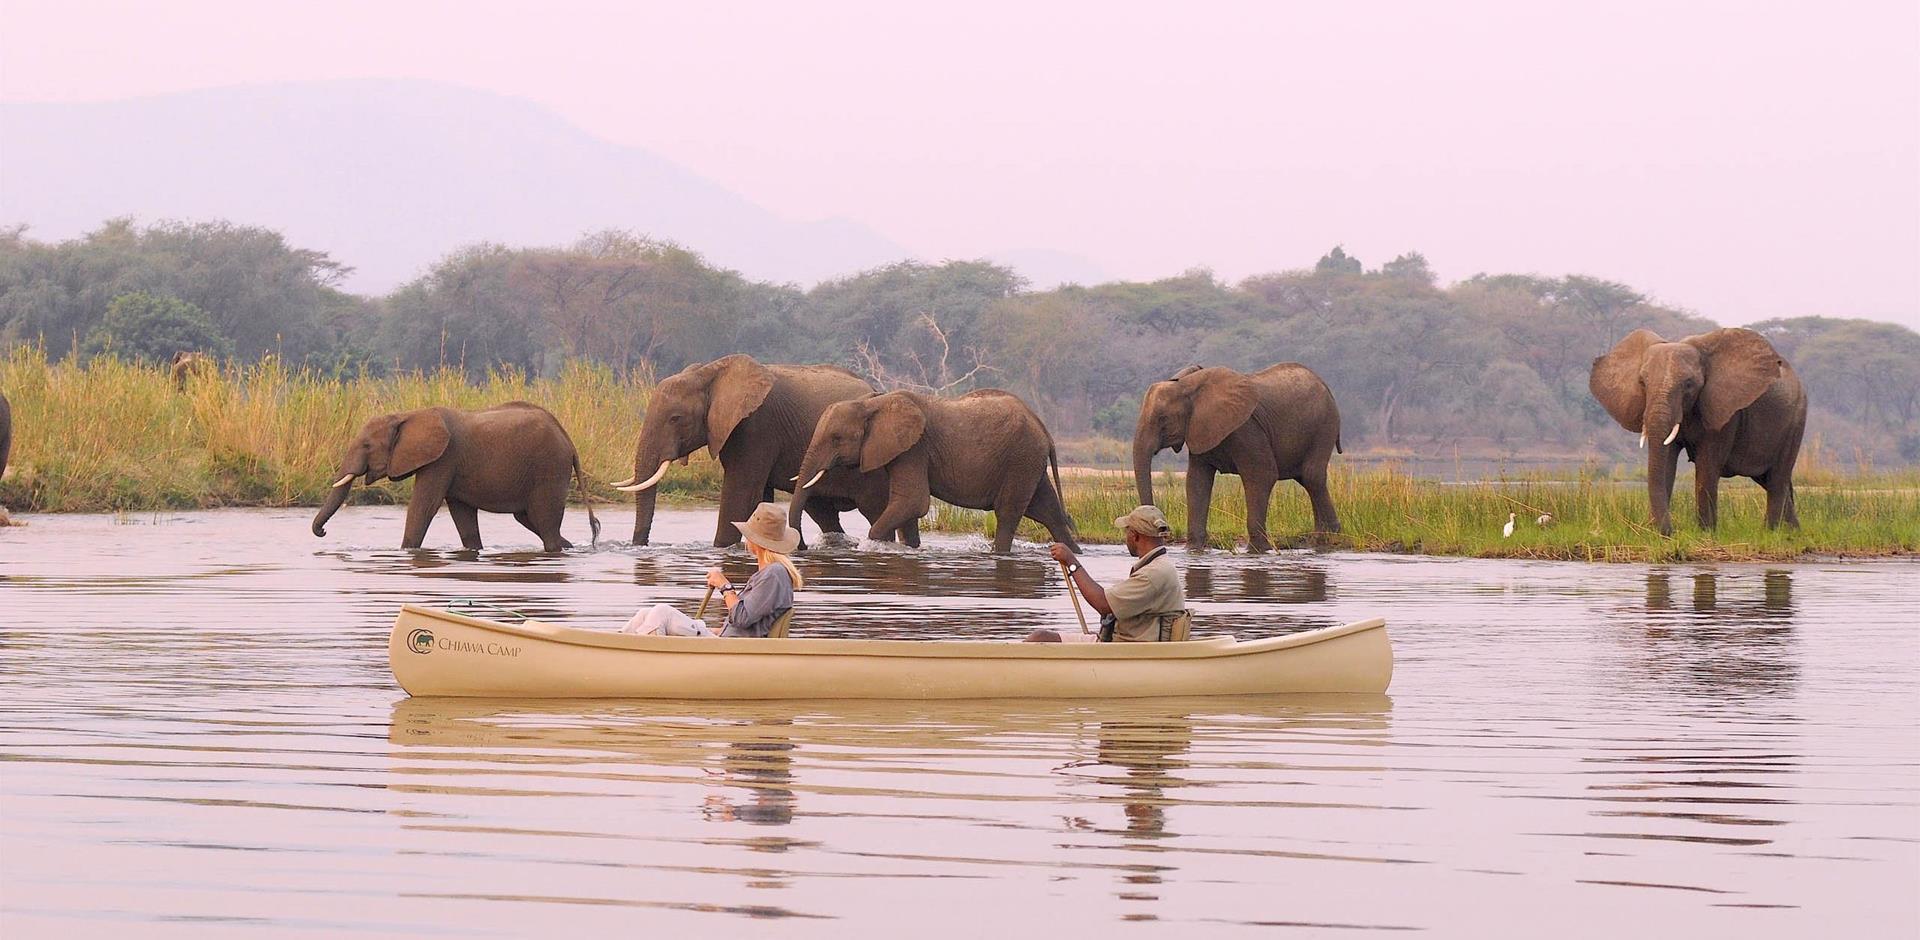 Lower Zambezi river safari